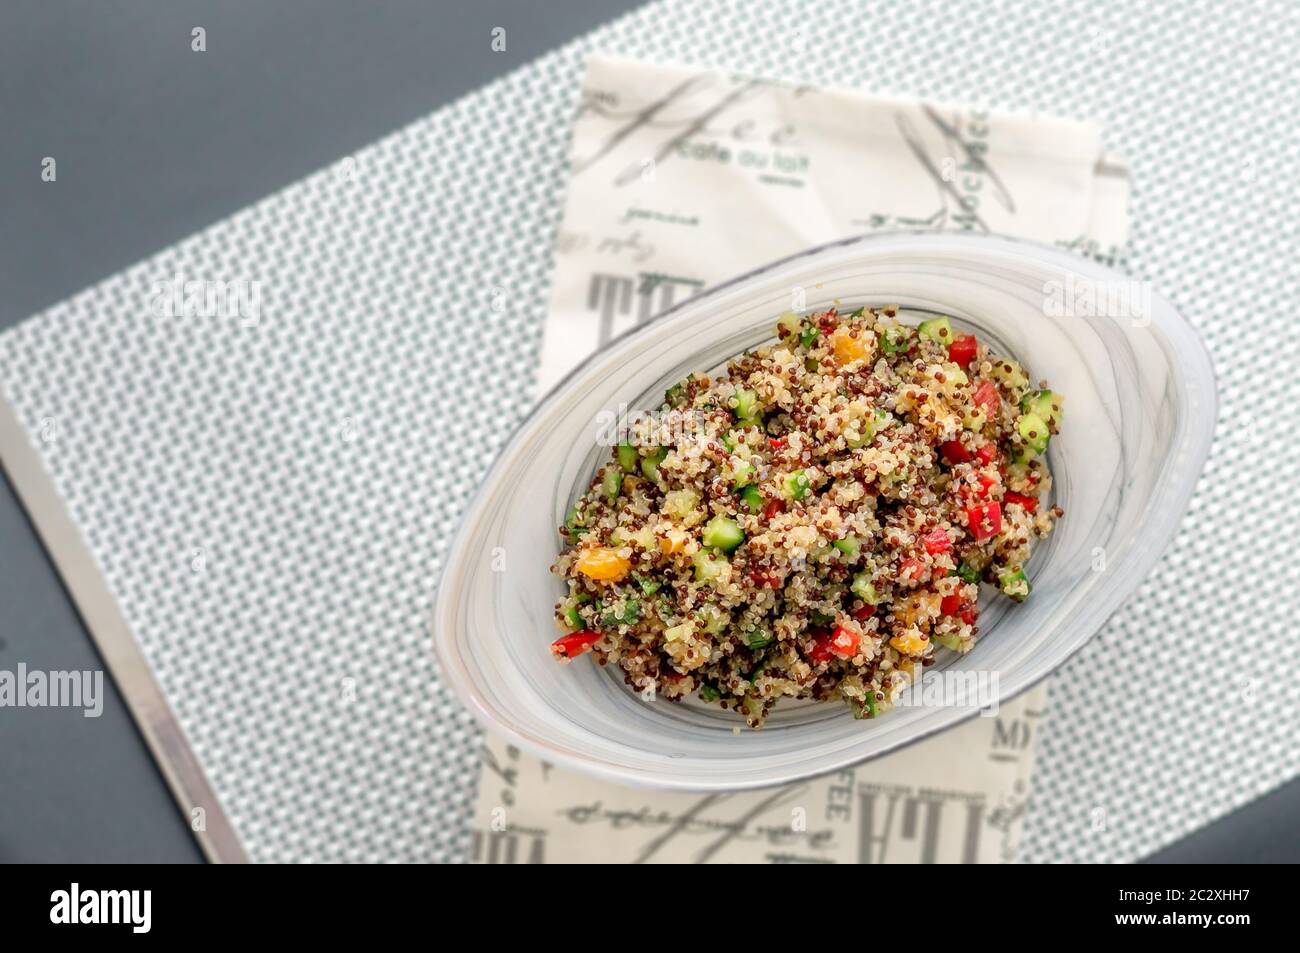 Quinoa-Salat von oben betrachtet. Quinoa Salate sind sehr gesund und einfach zu tun! Quinoa ist ein Getreide, das aus Südamerika stammt, wird es oft genannt Stockfoto